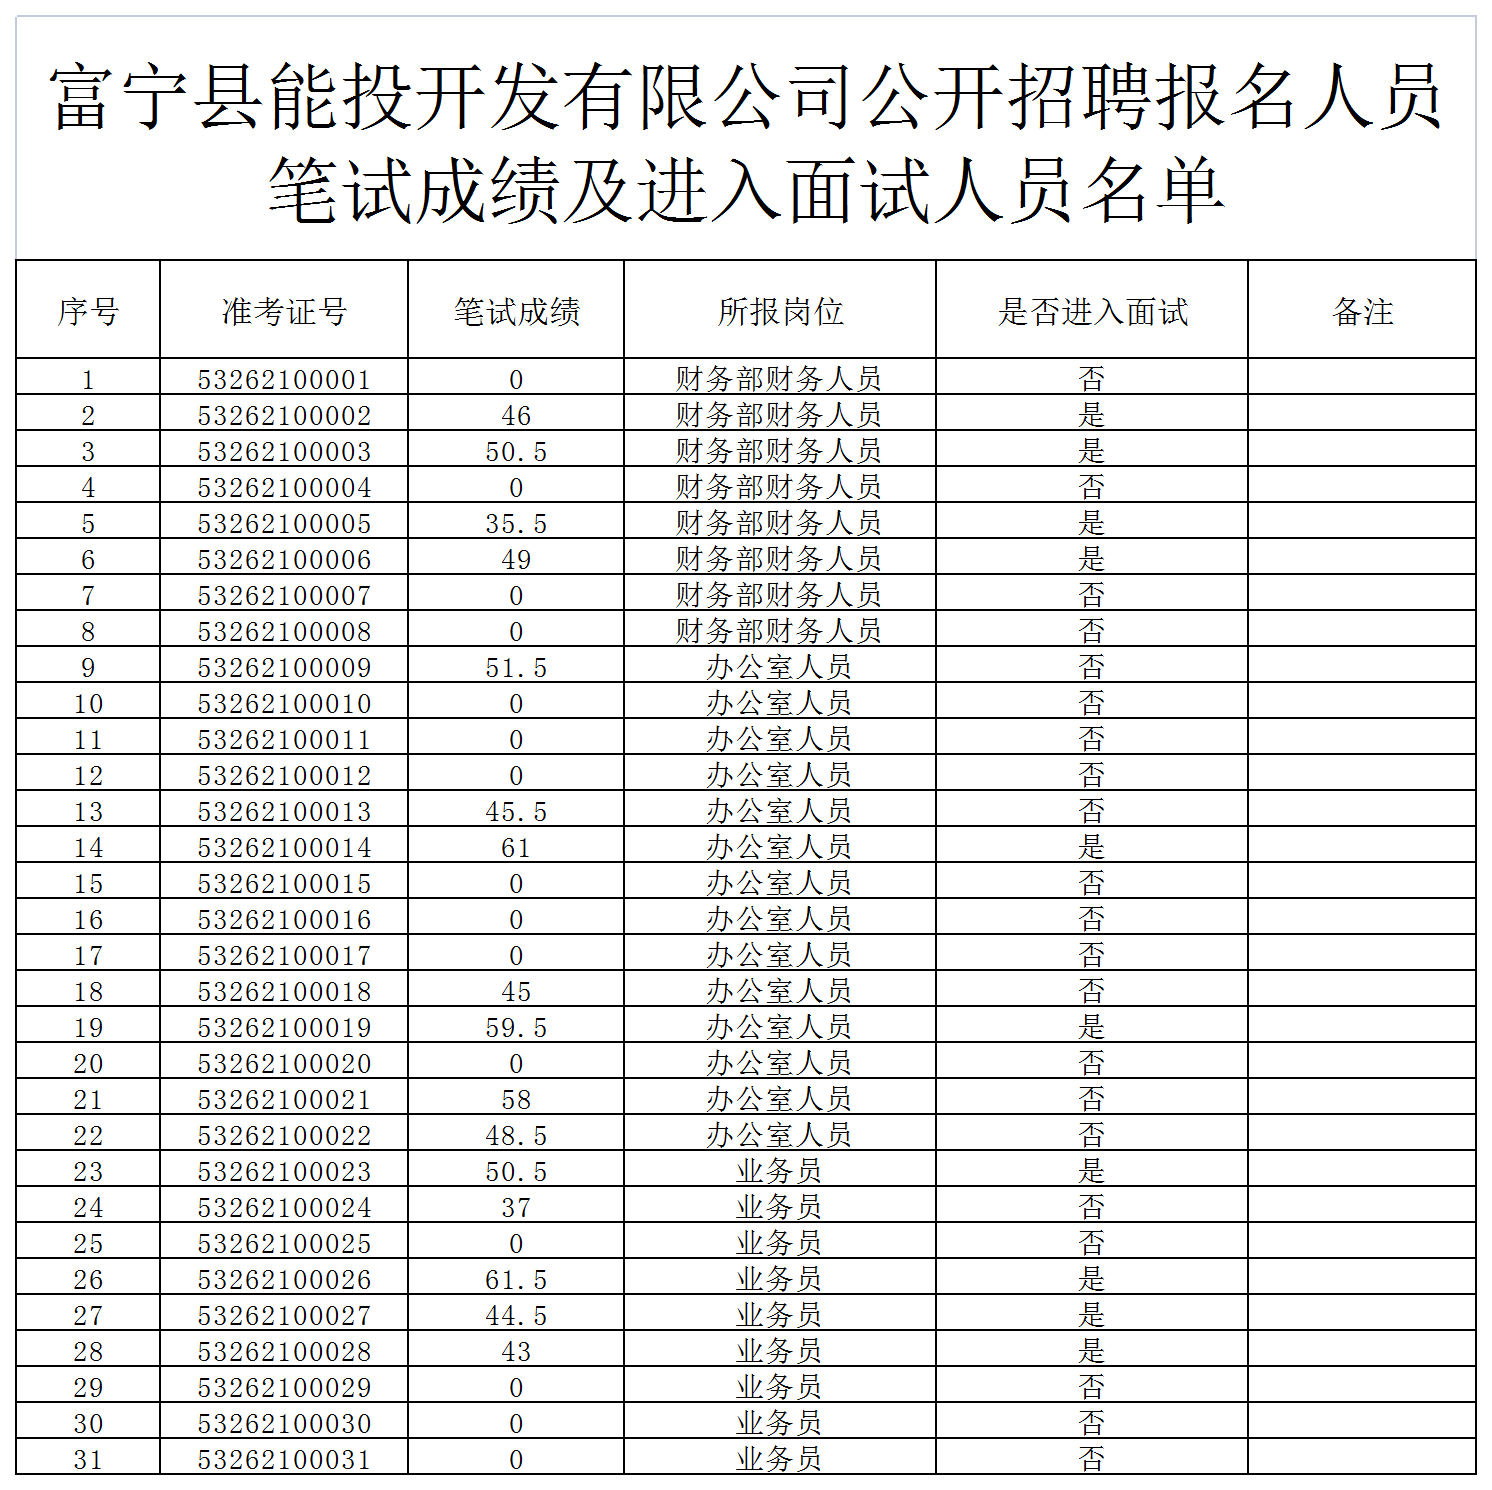 富宁县能投开发有限公司笔试成绩及进入面试人员名单_A1F33.png